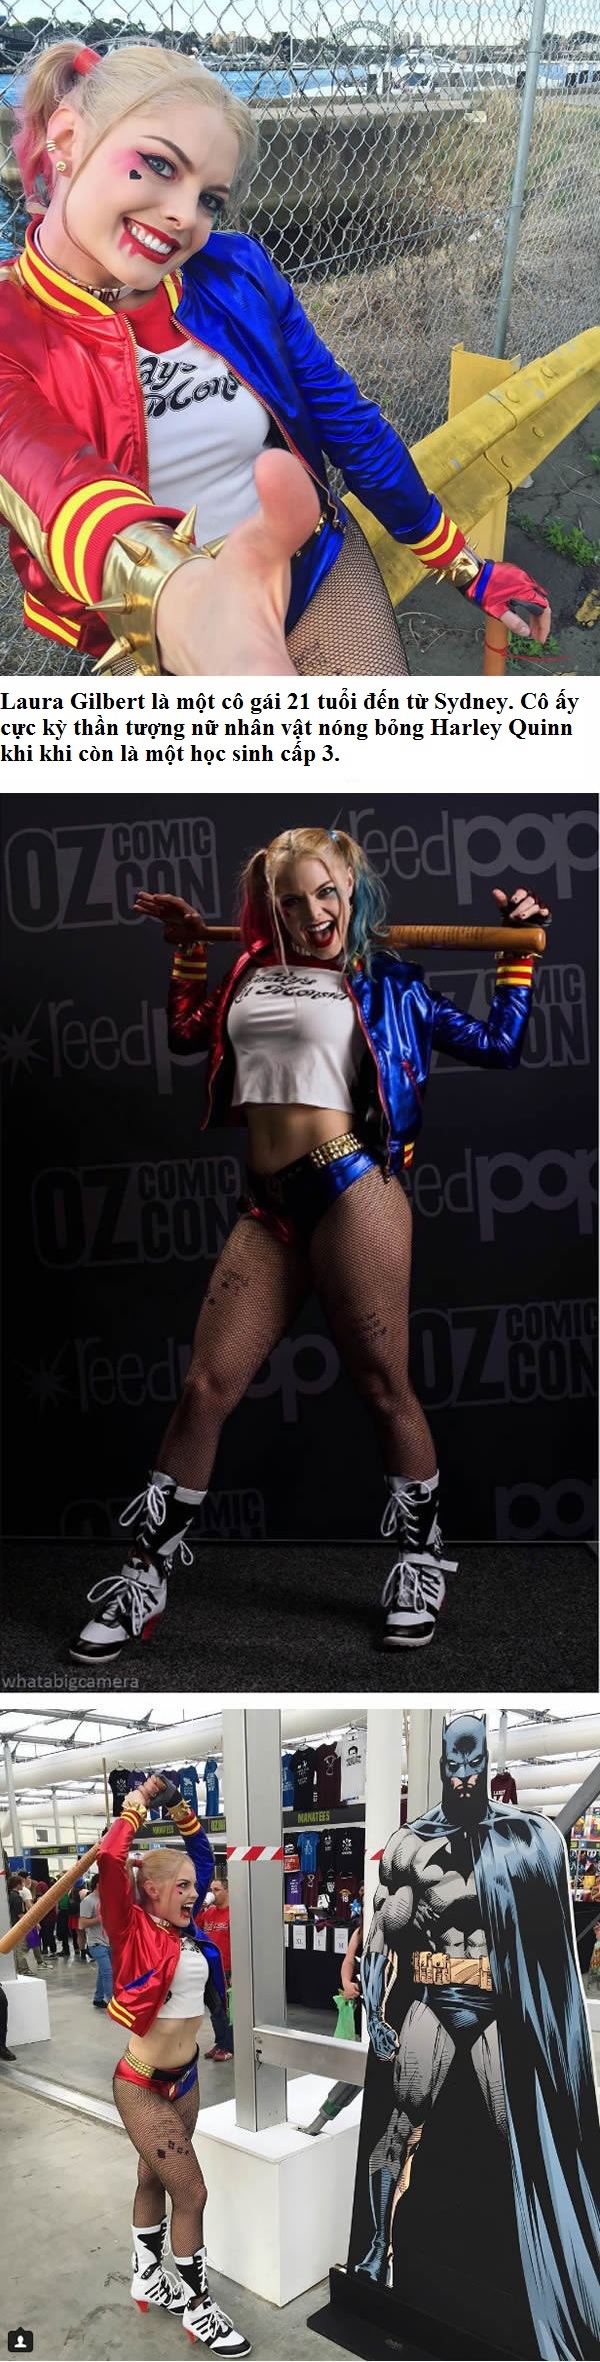 Hóa thân thành Harley Quinn nóng bỏng không kém Margot Robbie